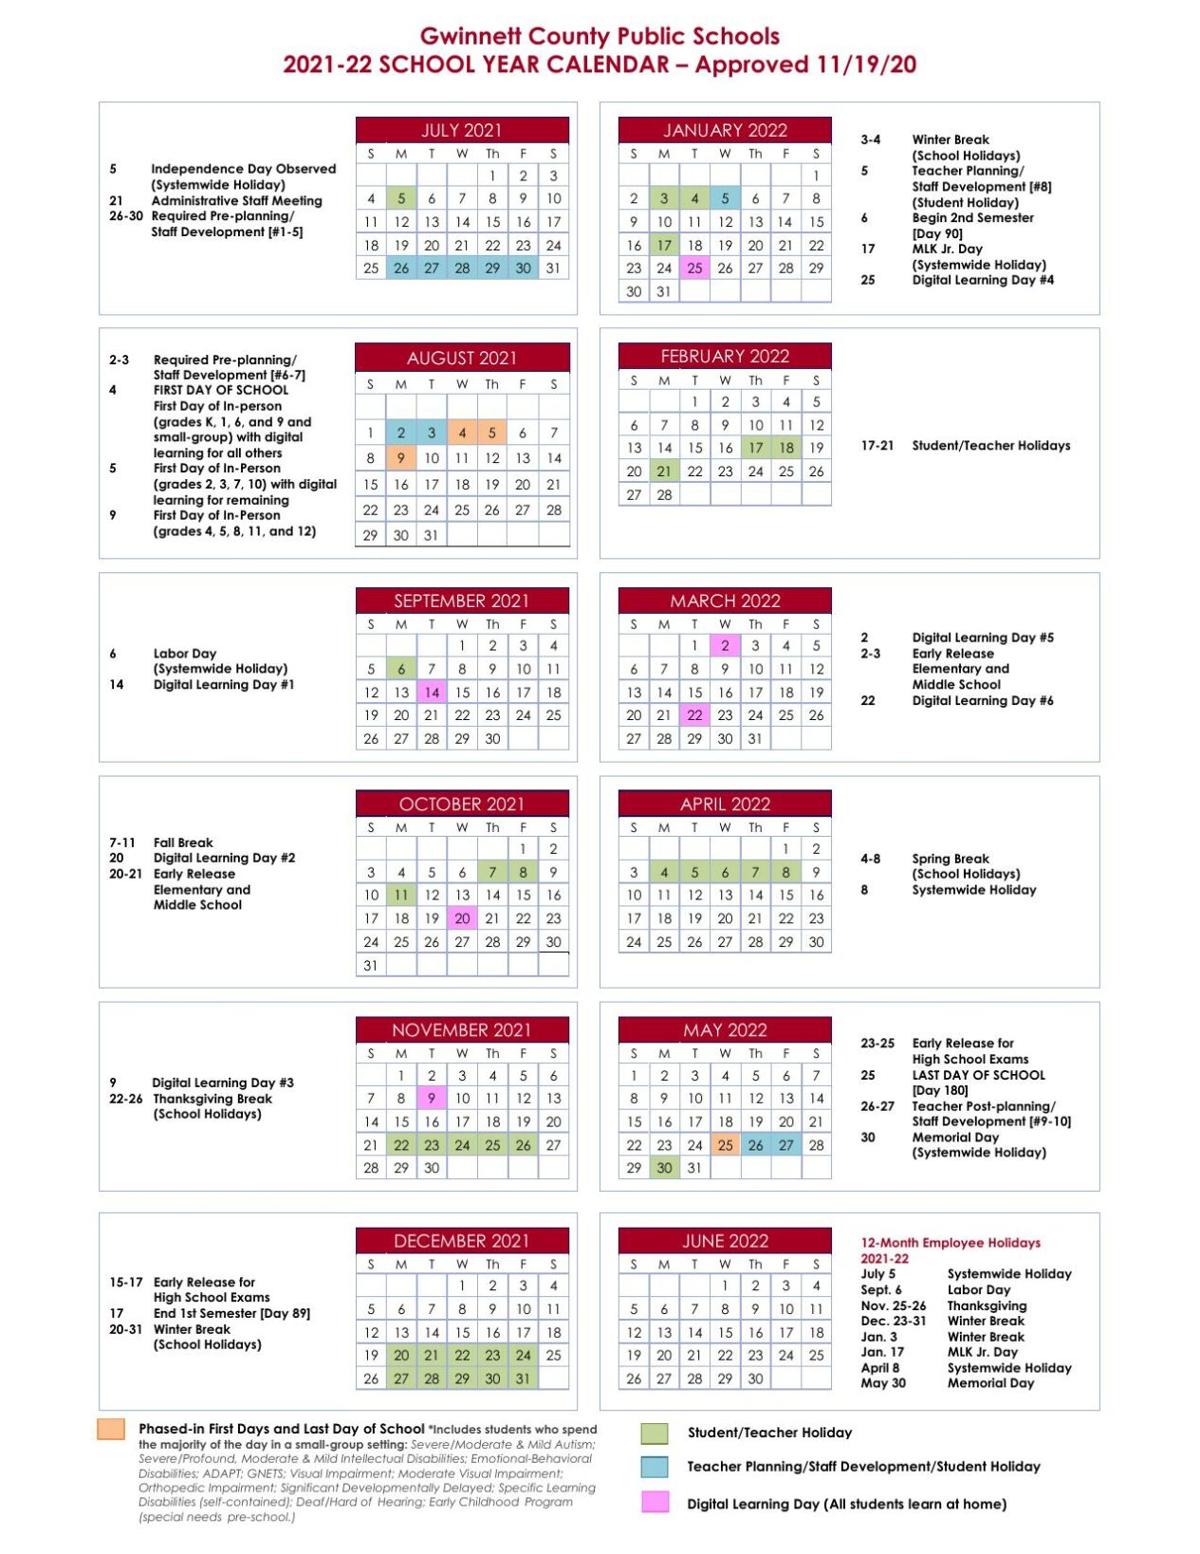 Texas Tech Academic Calendar 2022 23 Gwinnett County Public Schools' 2021-2022 School Year Calendar | |  Gwinnettdailypost.com